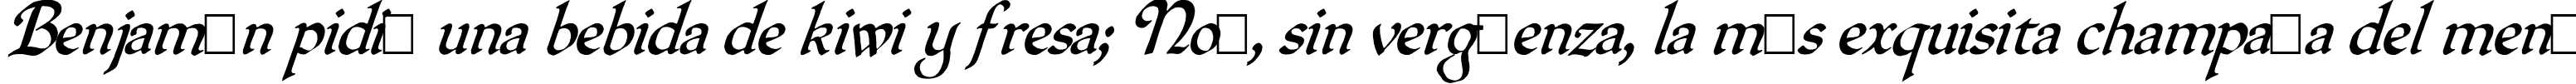 Пример написания шрифтом QuillOblique текста на испанском